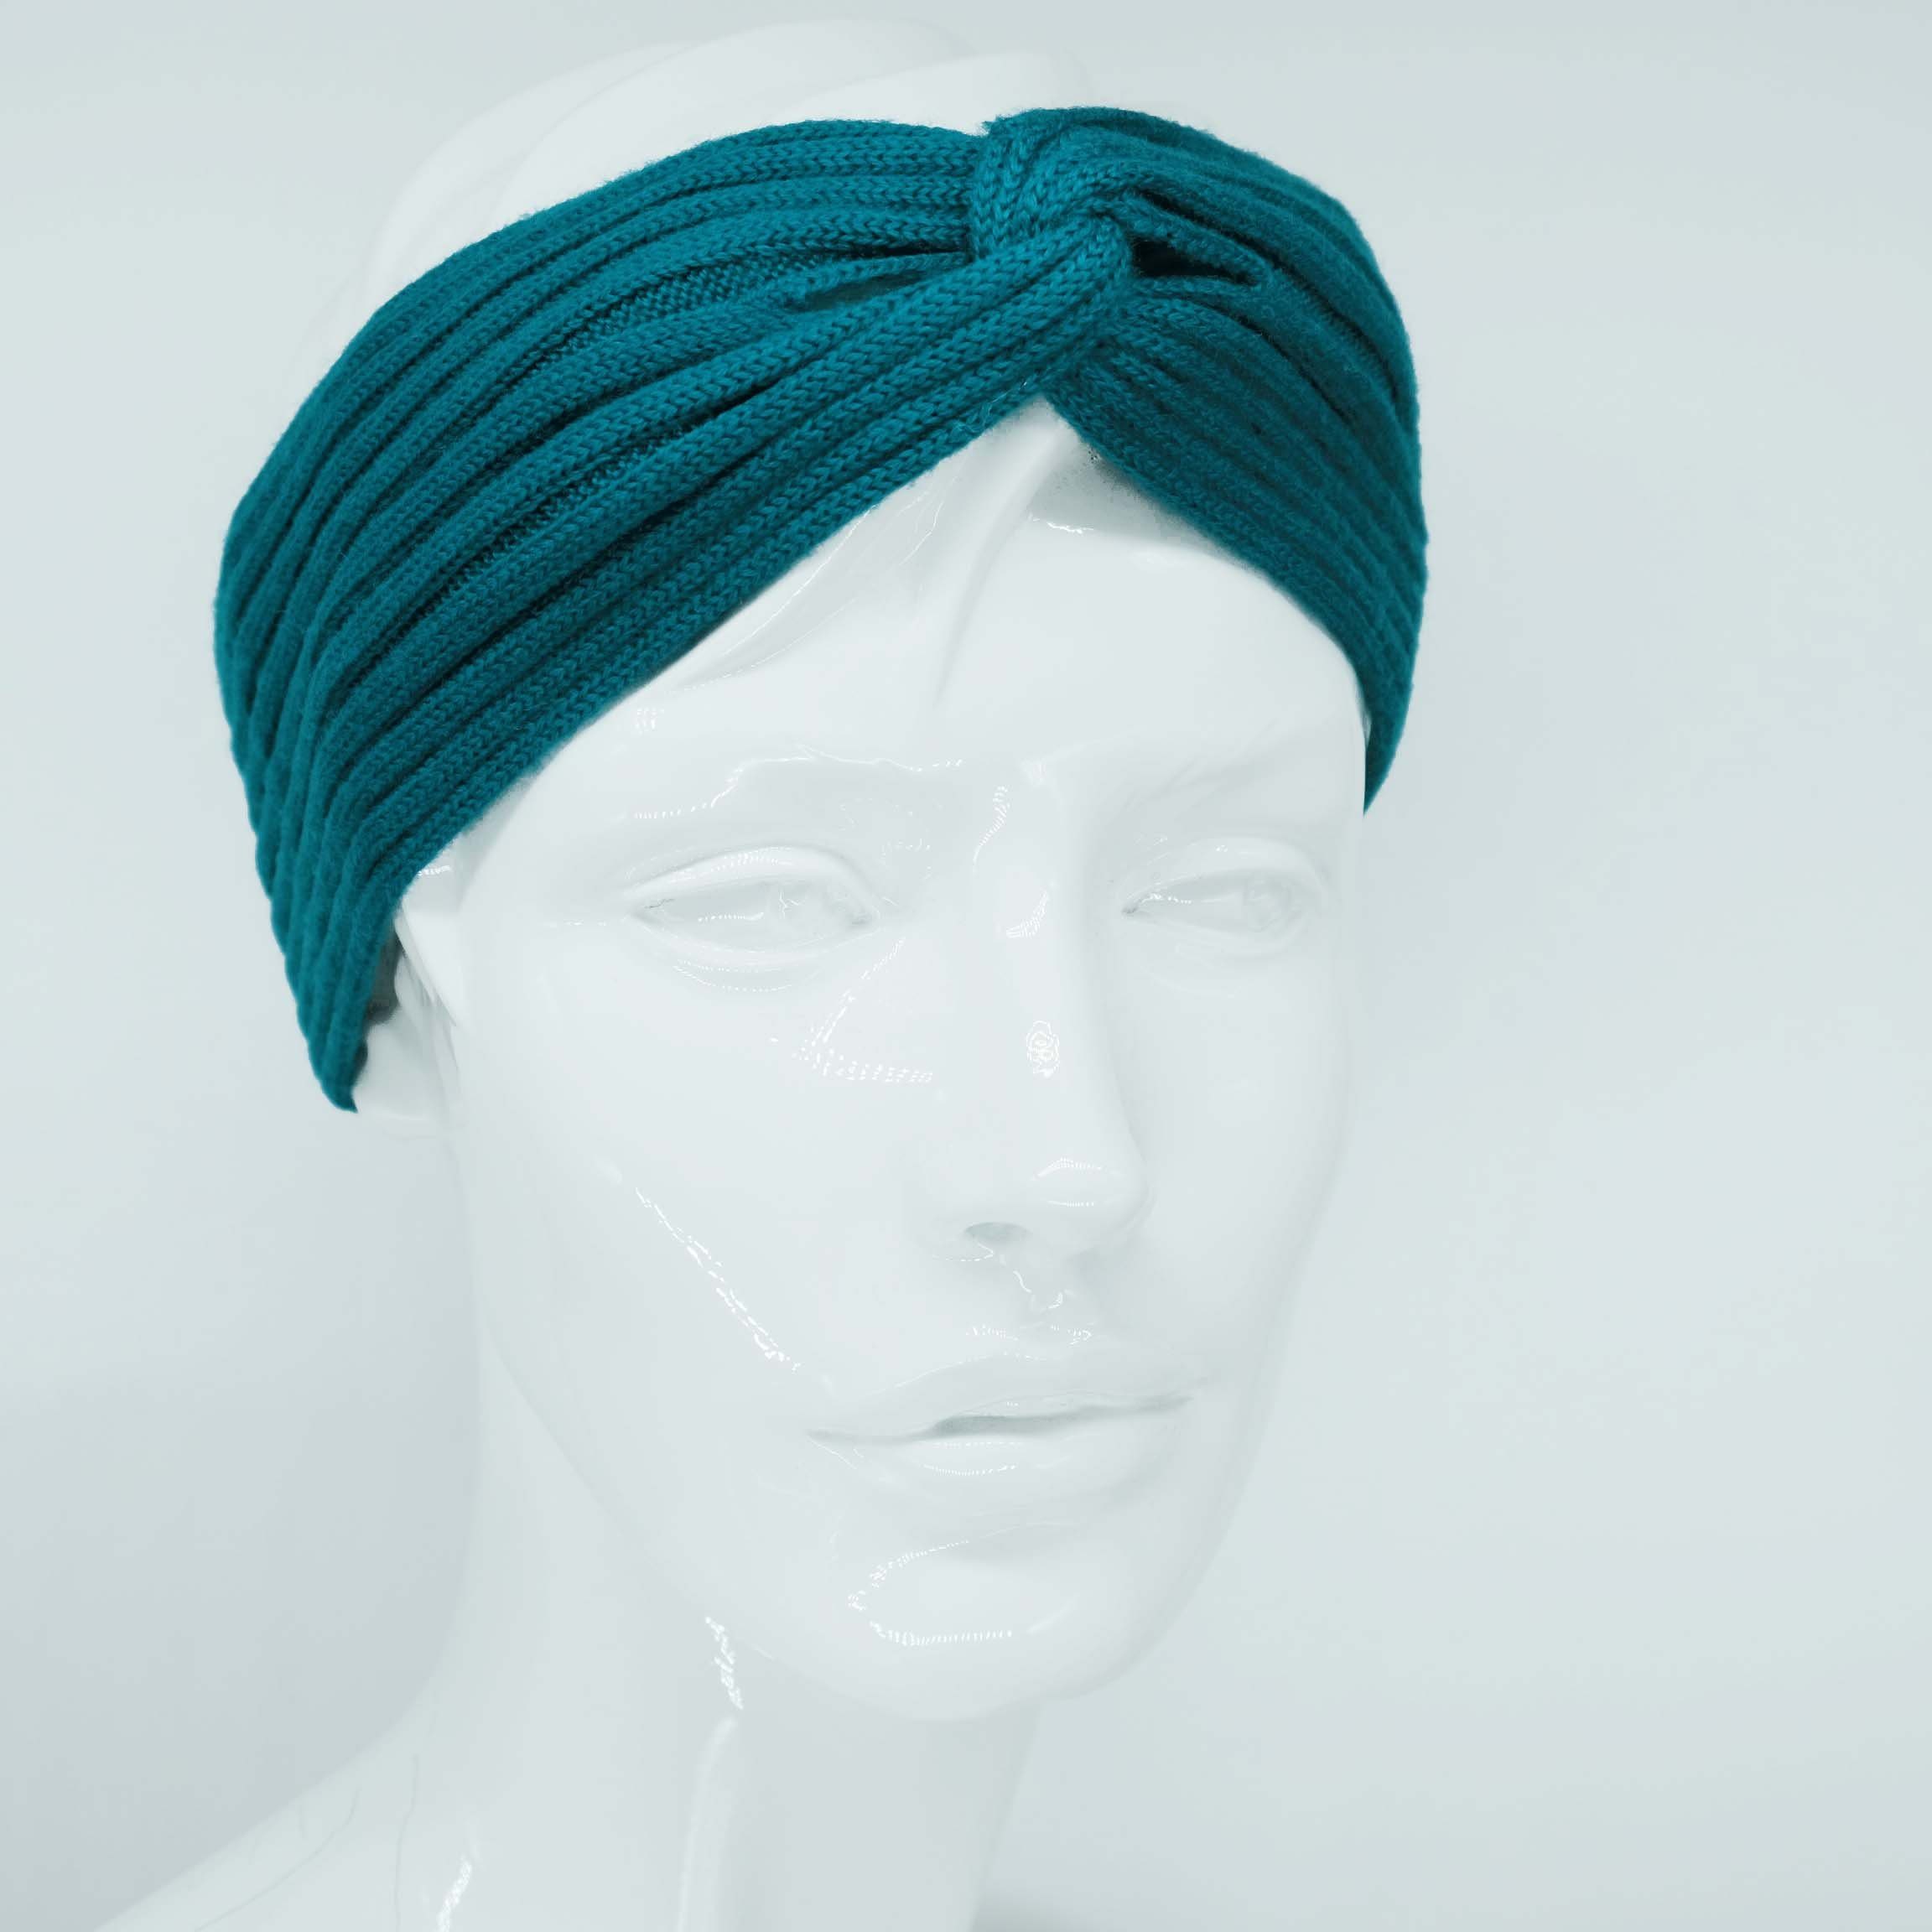 BEAZZ Stirnband Stirnband Ohrenwärmer Damen Winter 100% WOLLE Merino Feinstrick, warm und weich dunkel petrol